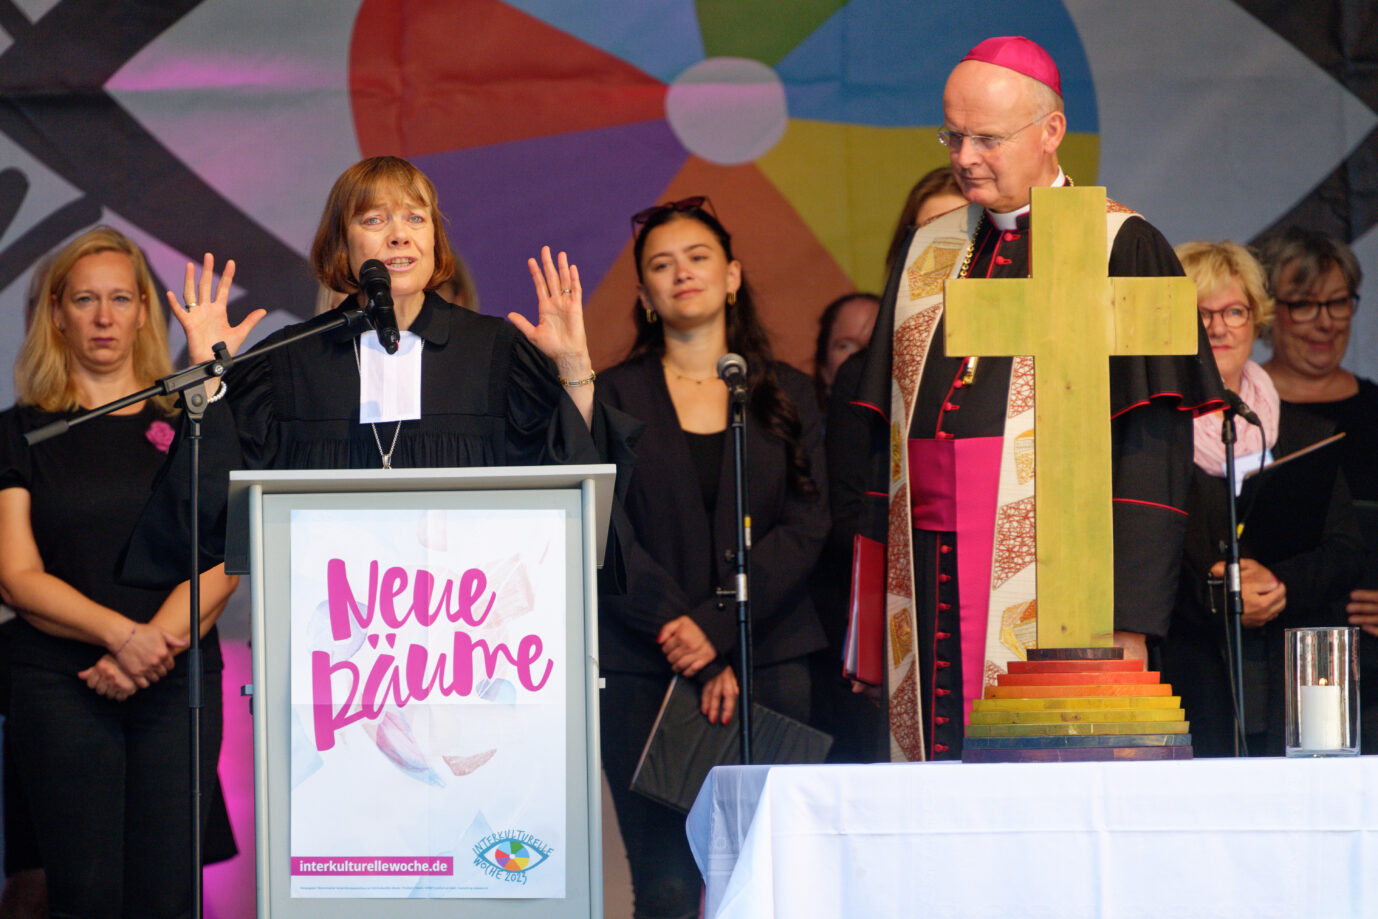 Auf dem Foto ist die EKD-Ratsvorsitzende Annette Kurschus während einer ökumenischen Veranstaltung zu sehen. (Themenbild/Symbolbild)